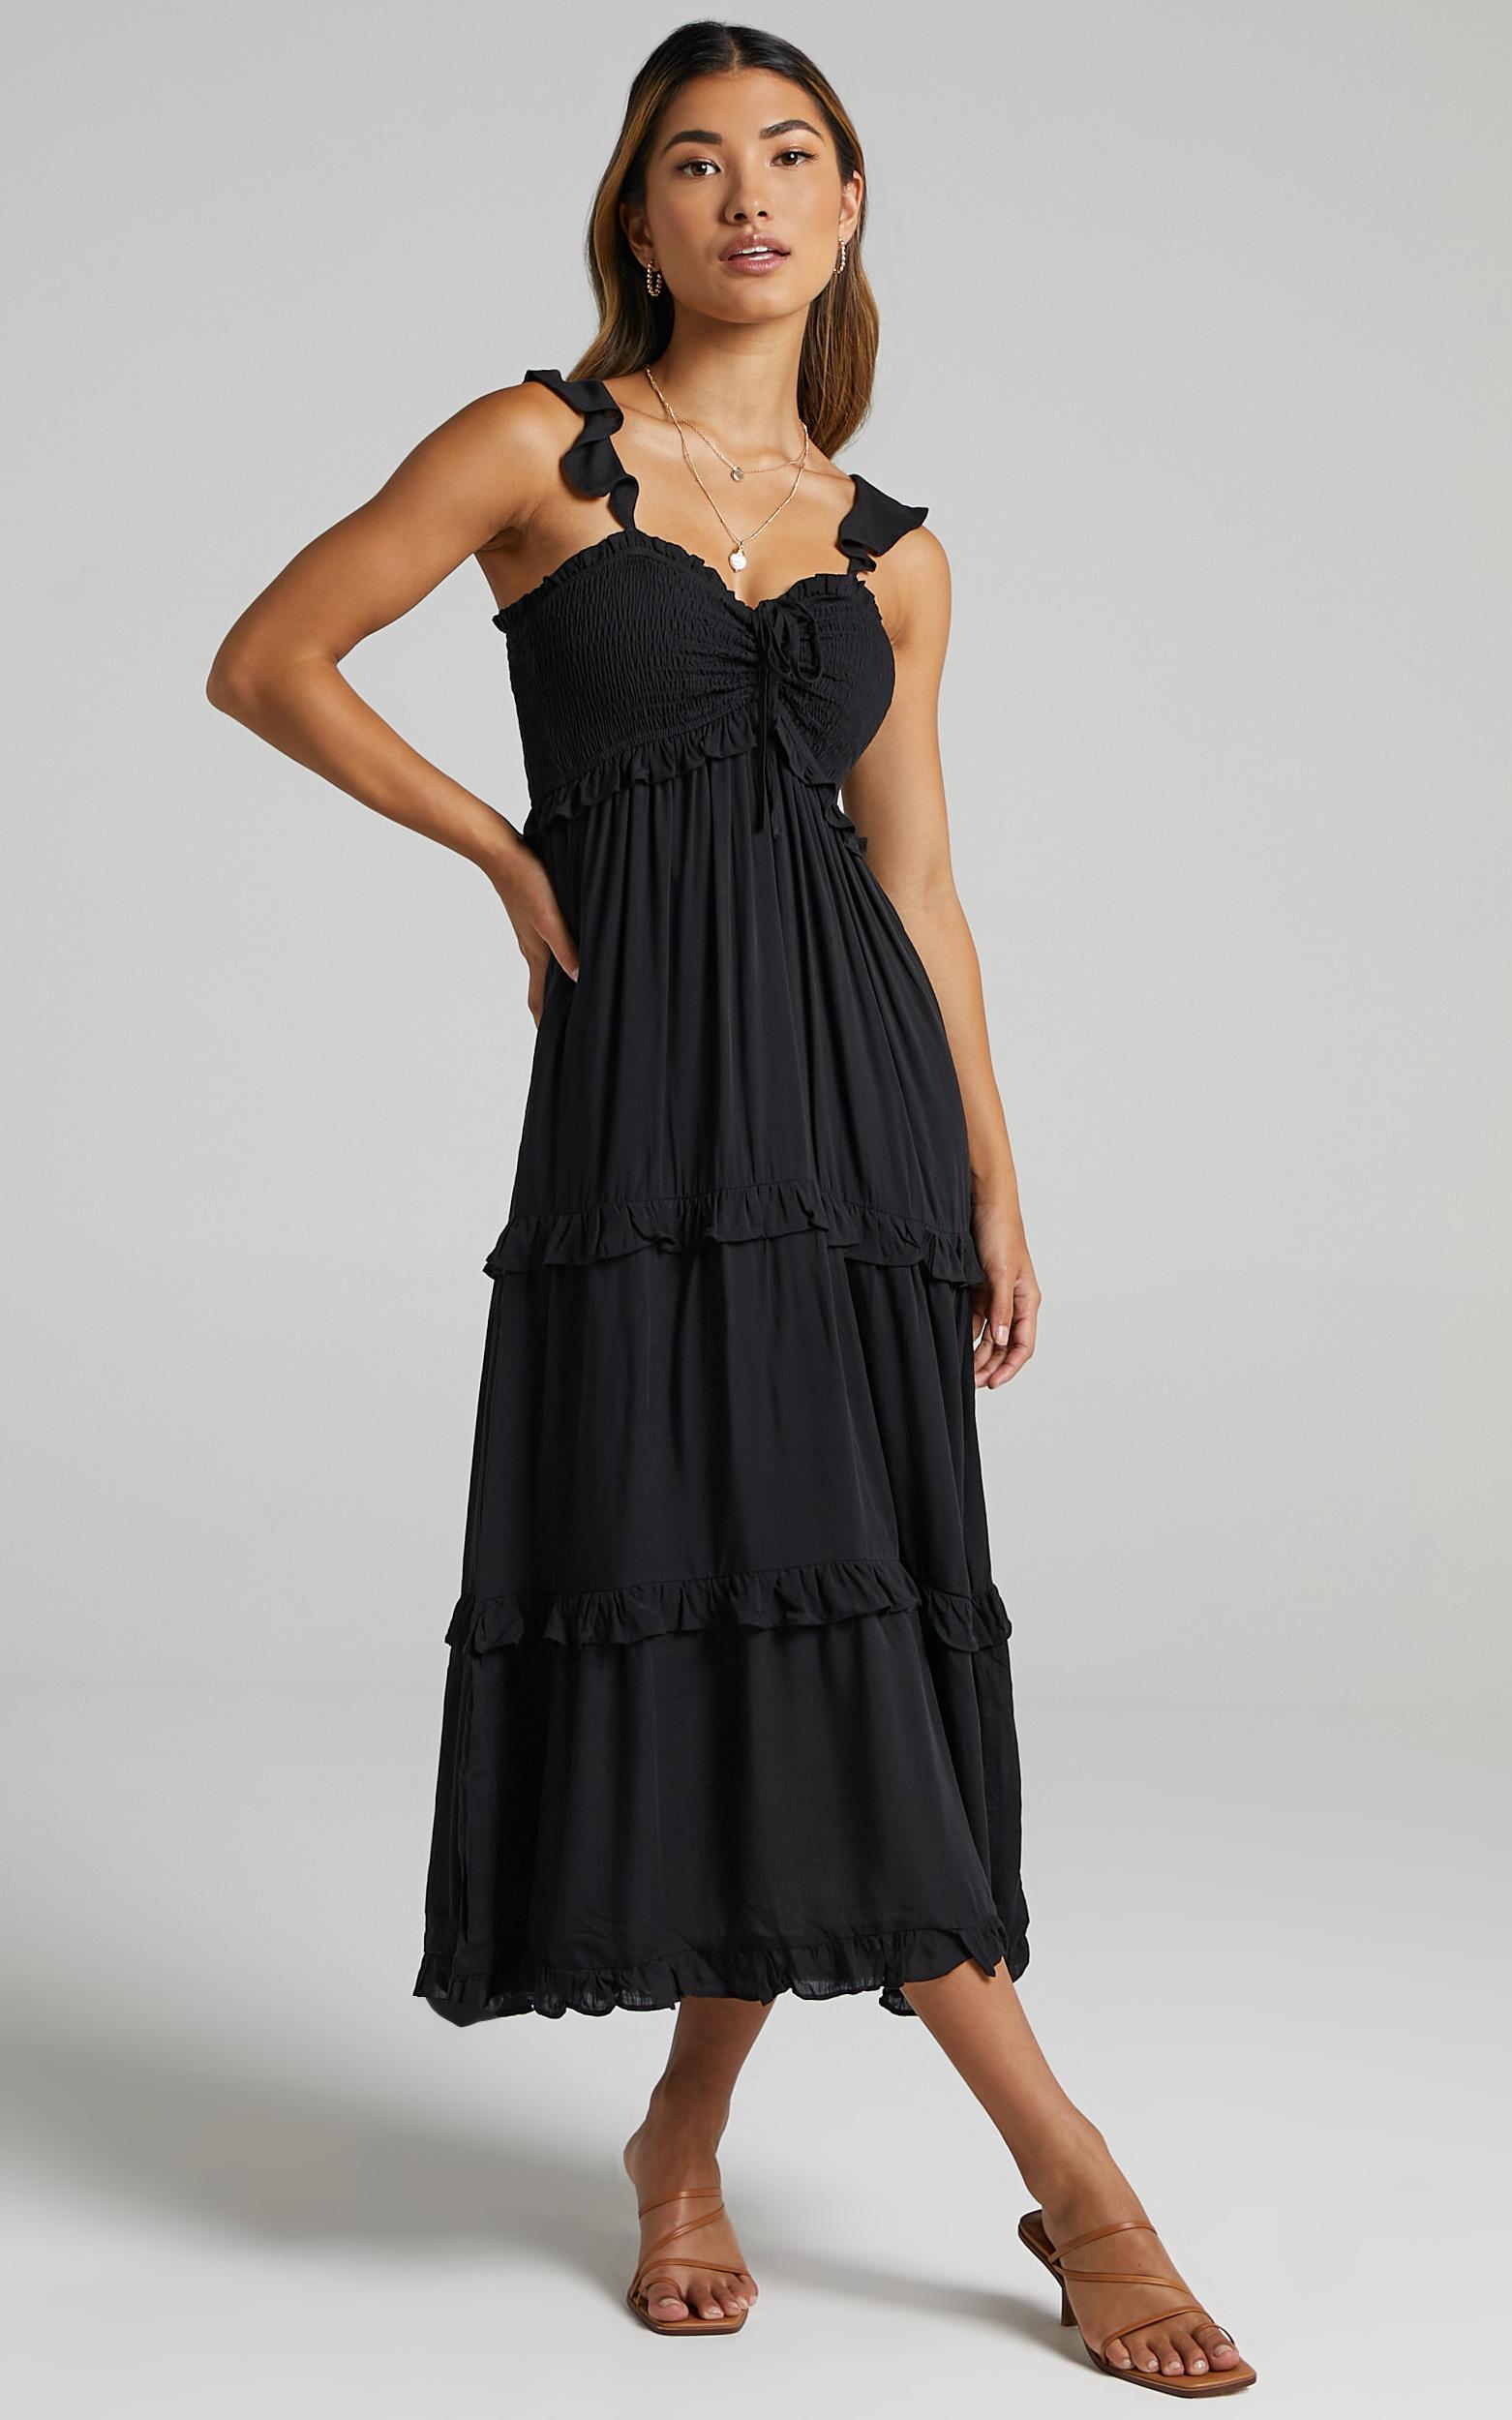 Good For The Soul Dress in Black - 06, BLK1, hi-res image number null